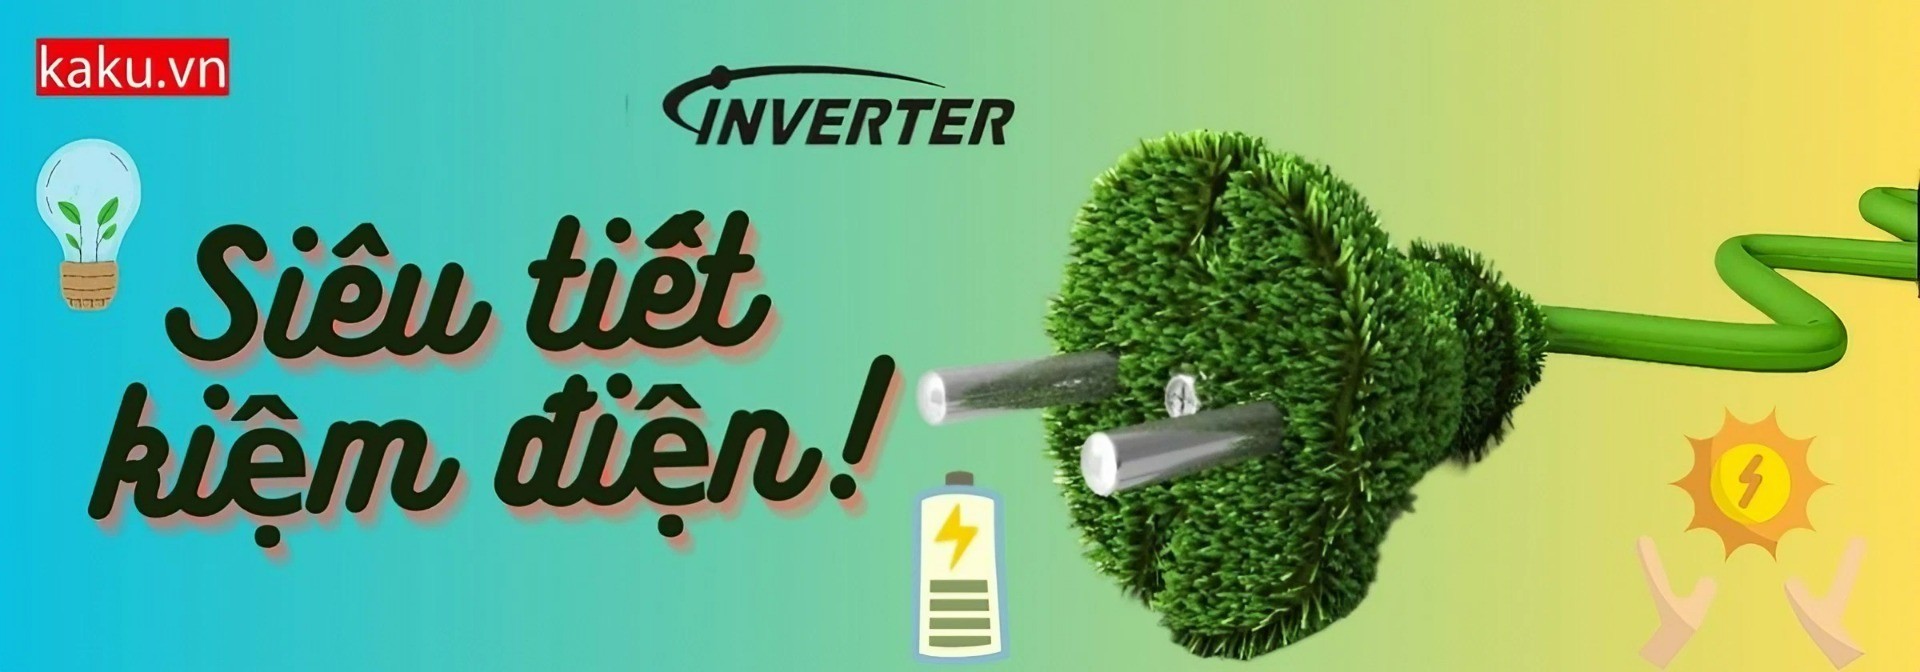 Công nghệ Inverter siêu tiết kiệm điện